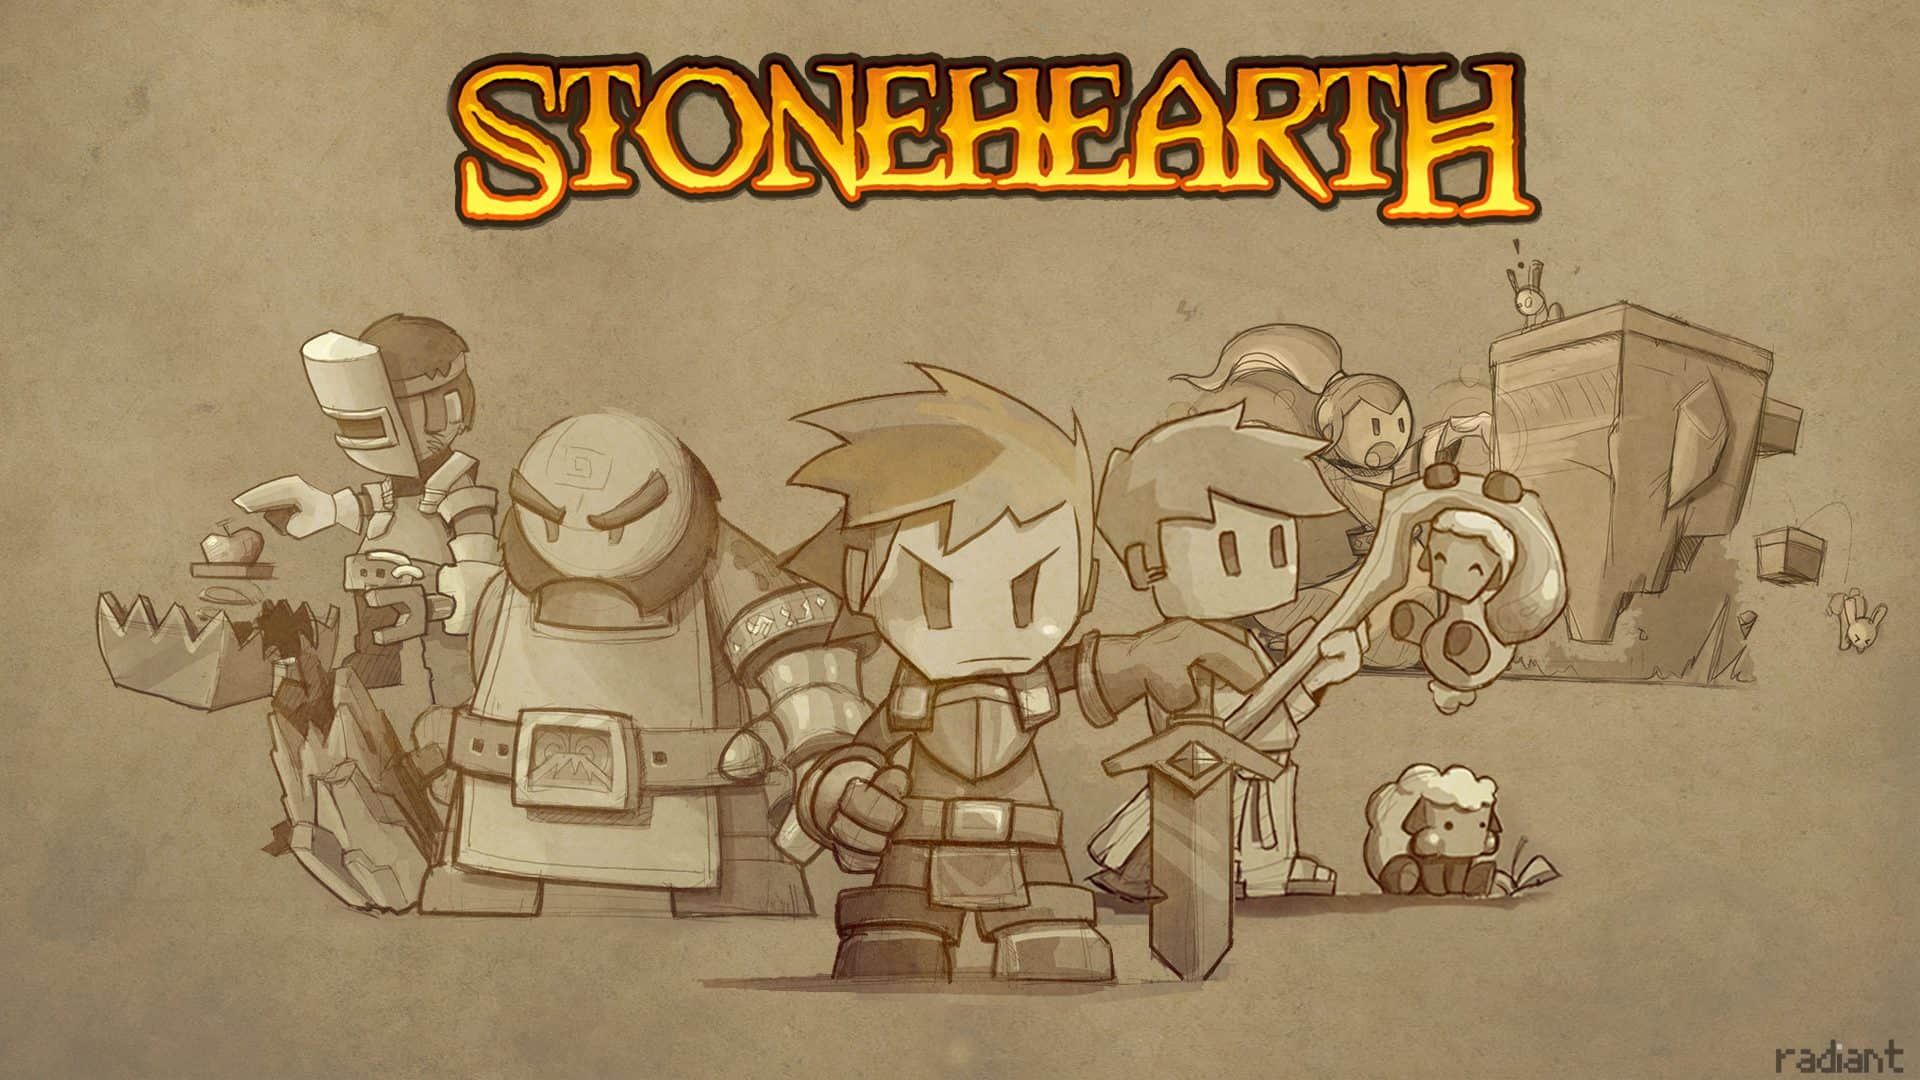 Stonehearth